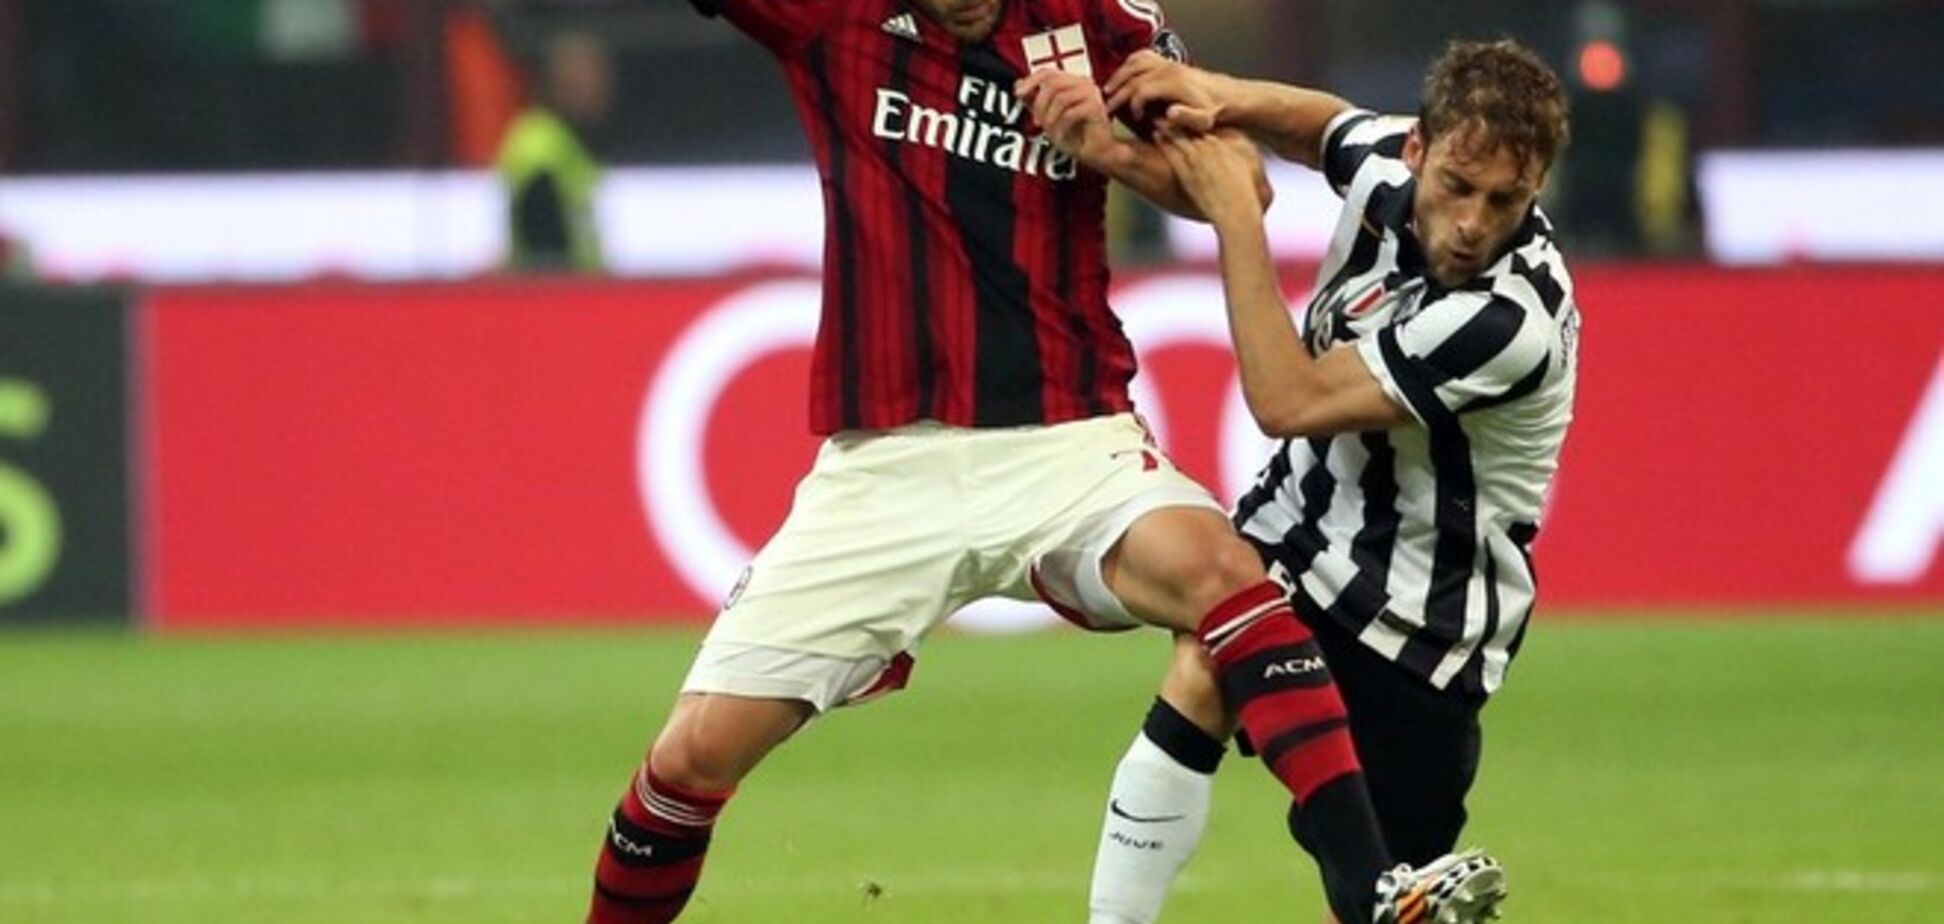 'Милан' в напряженном матче уступил 'Ювентусу'